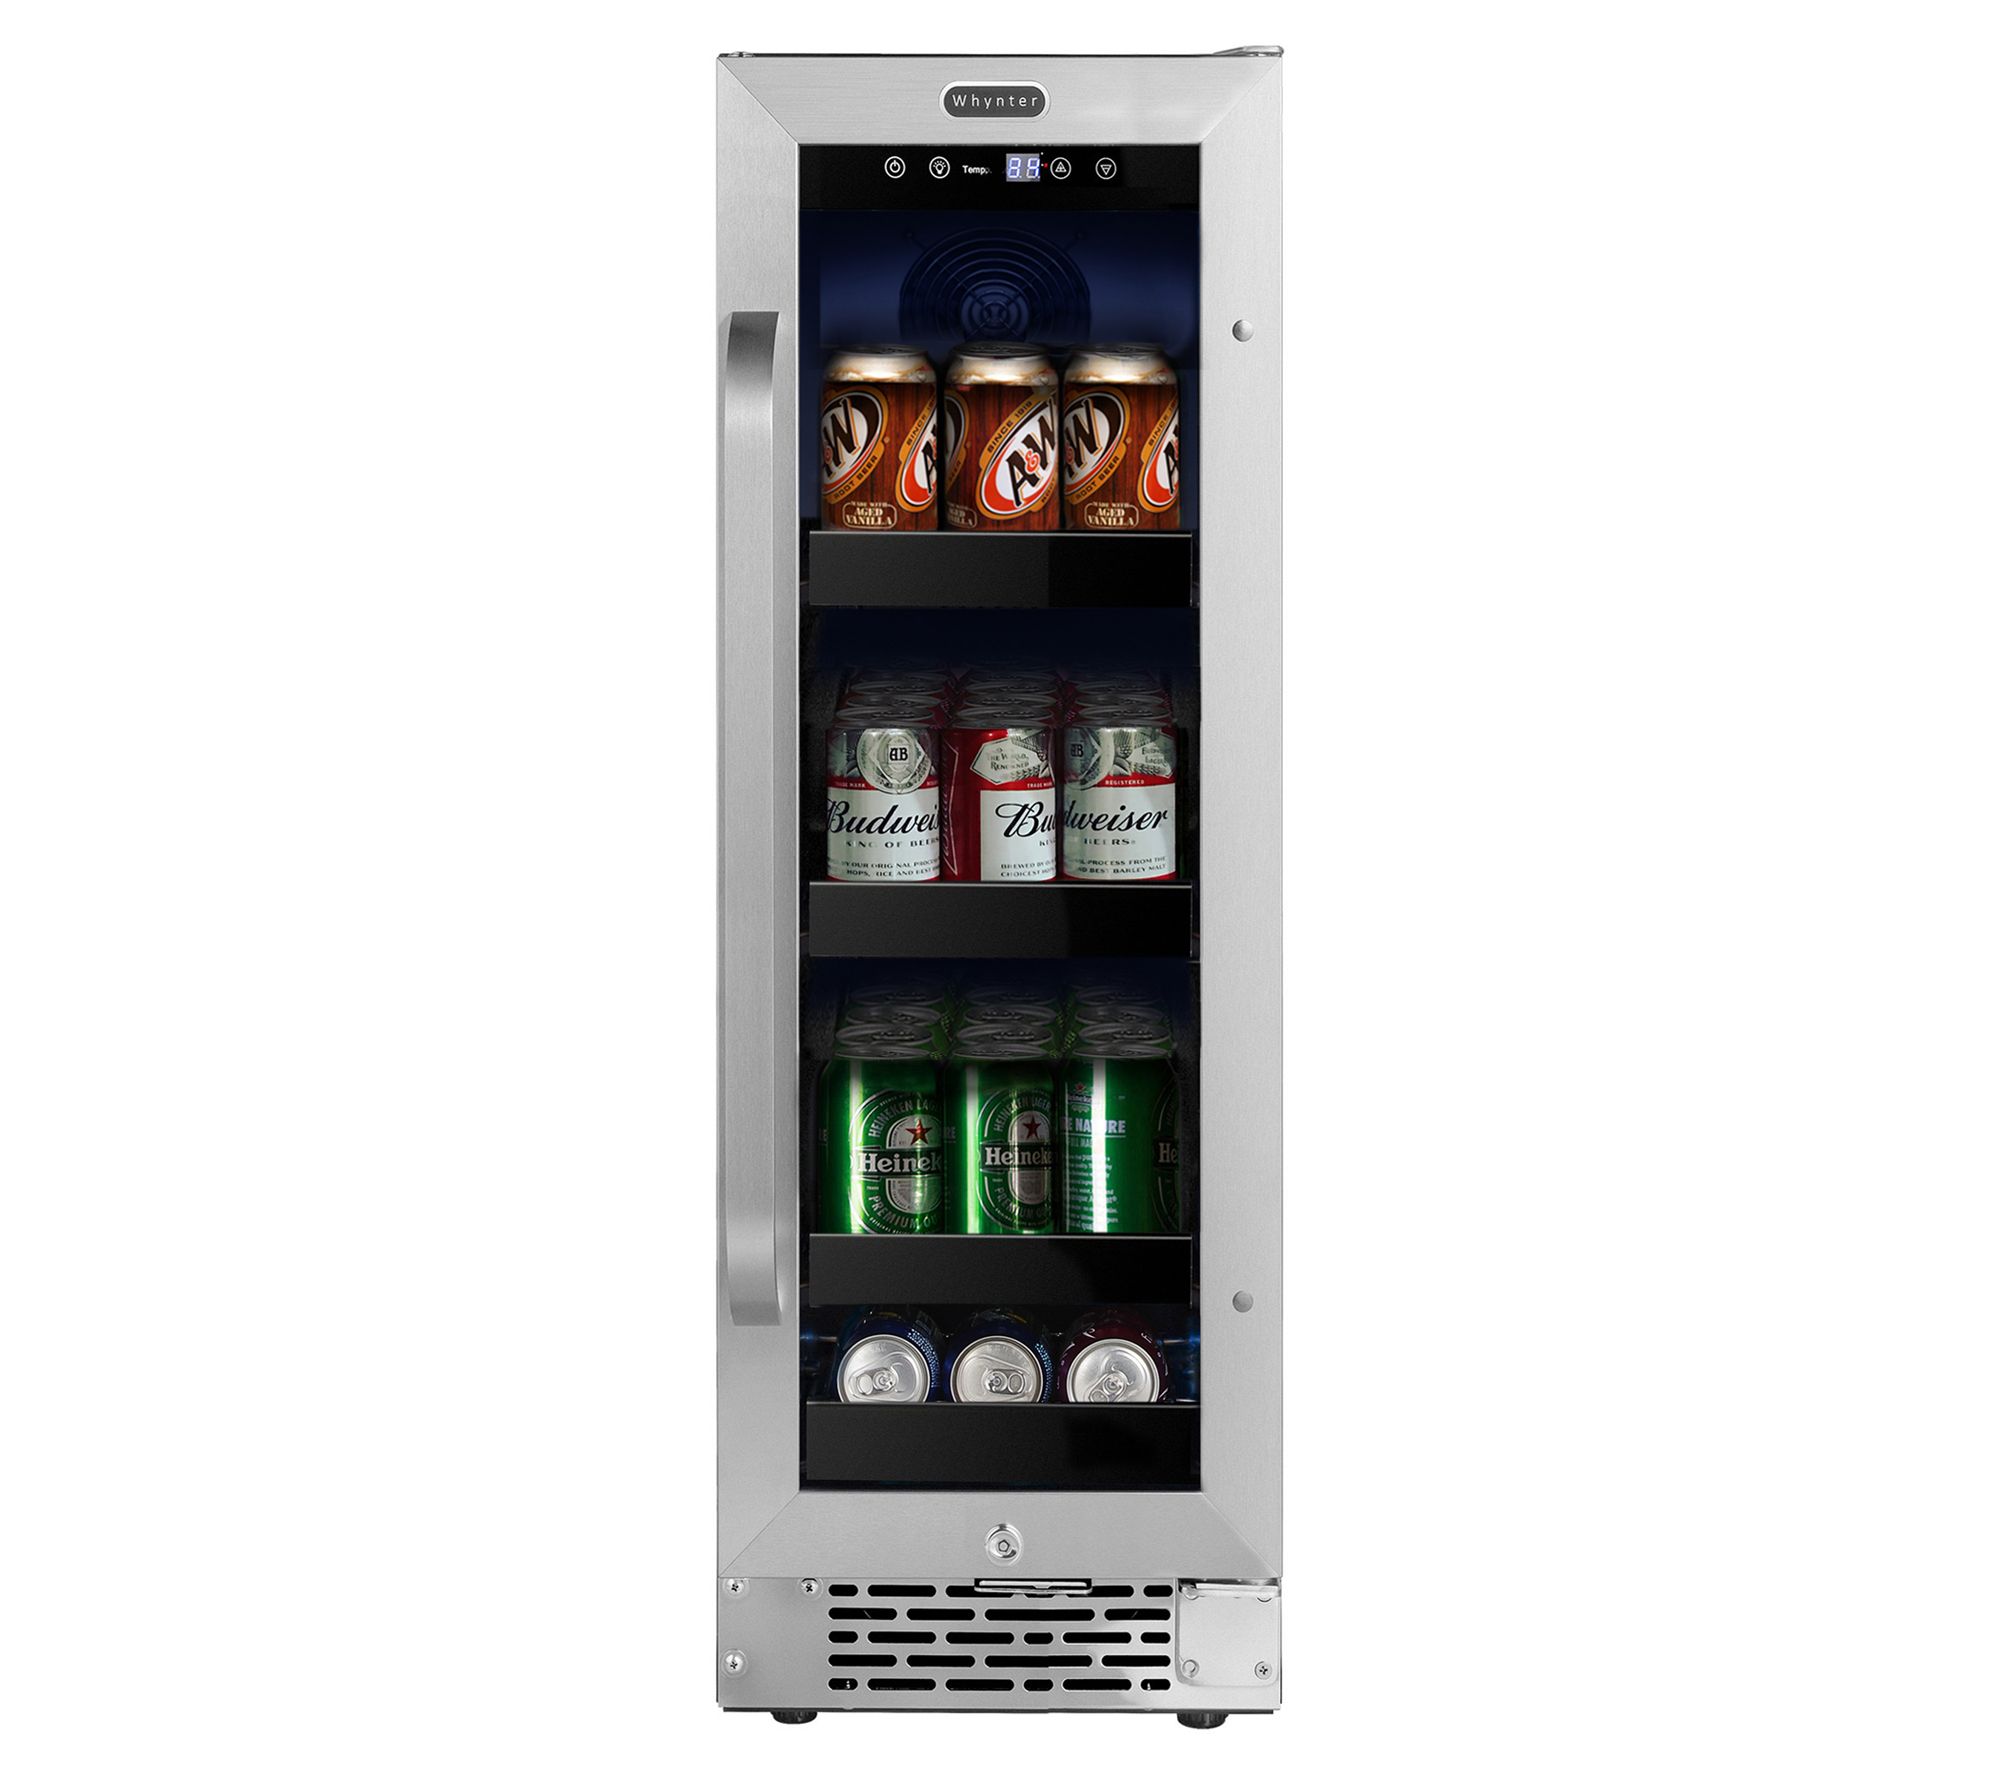 Black+decker Wine Cooler Refrigerator, Compressor Cooling 24 Bottle Wine  Fridge With Blue Light & Led Display, Freestanding Wine Cooler : Target